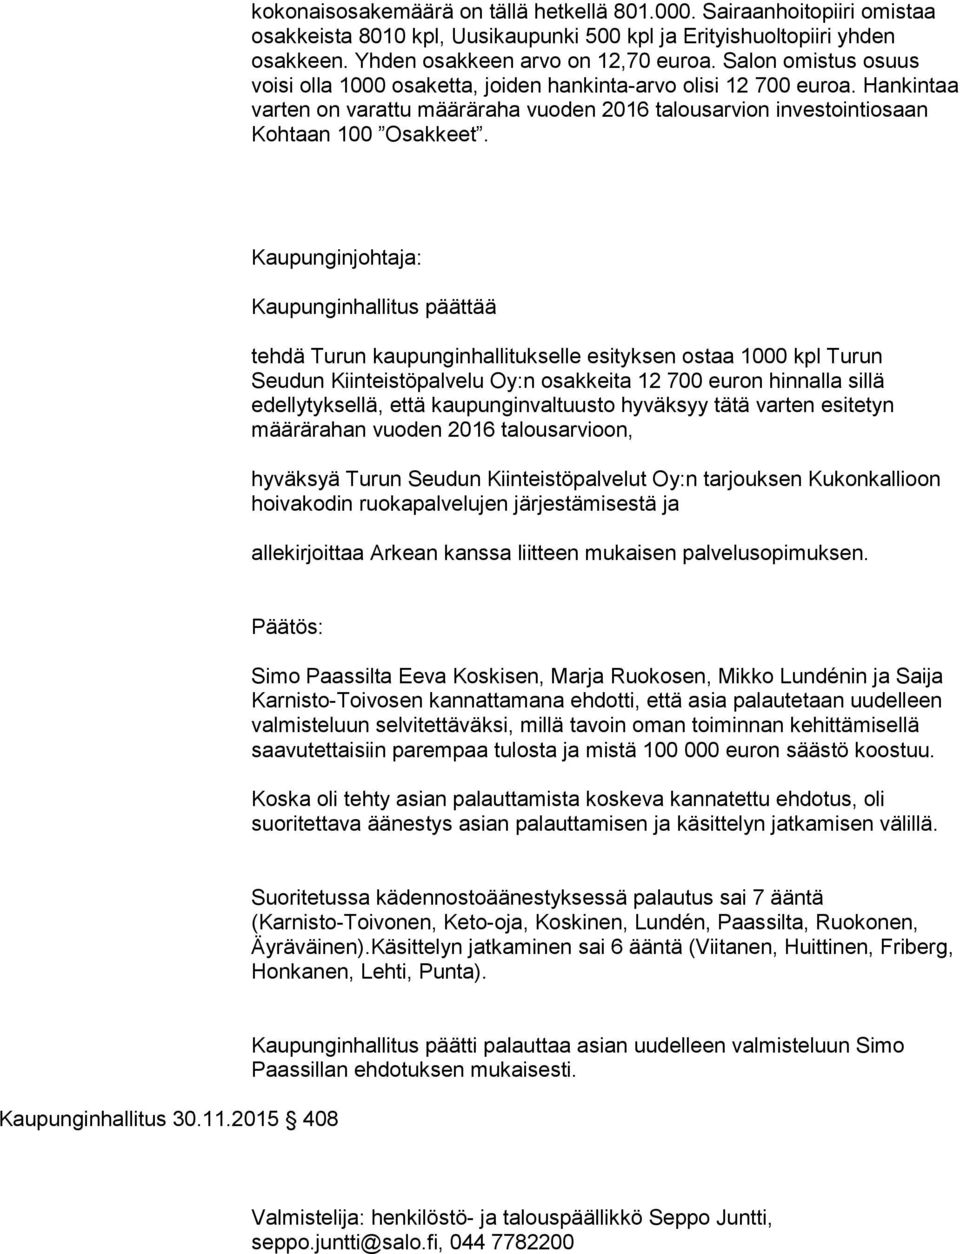 Kaupunginjohtaja: Kaupunginhallitus päättää tehdä Turun kaupunginhallitukselle esityksen ostaa 1000 kpl Turun Seudun Kiinteistöpalvelu Oy:n osakkeita 12 700 euron hinnalla sillä edellytyksellä, että